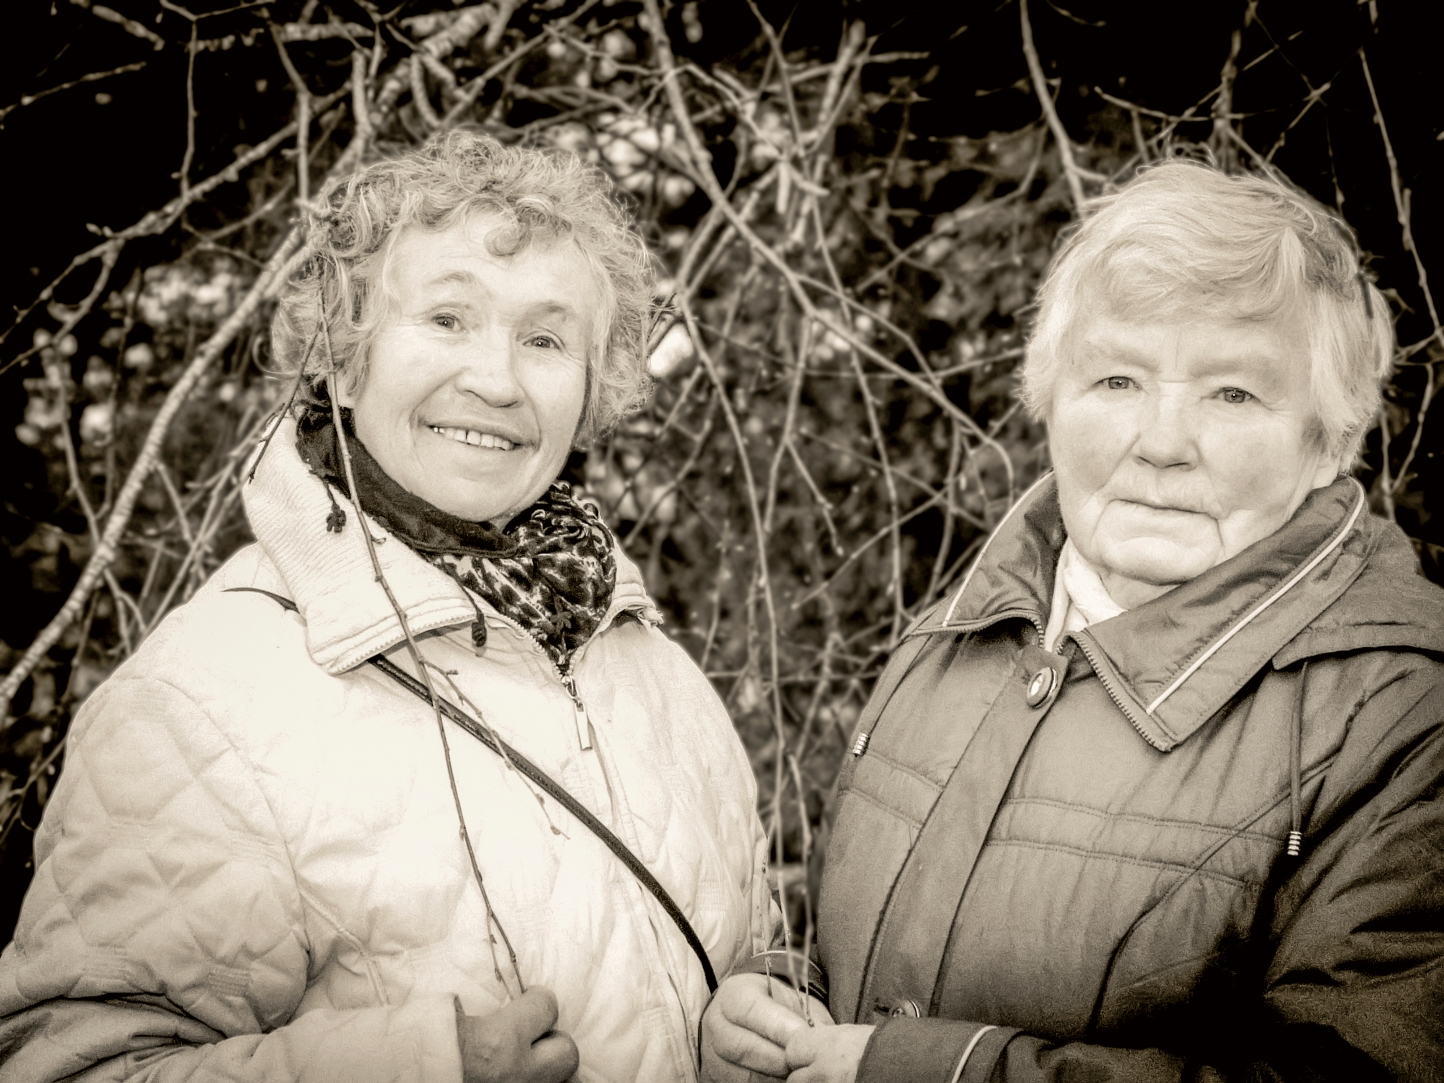 Dalė Ona ir Danutė: Šitą beržą sodino Danutė, o draugės mes jau apie trisdešimt metų...